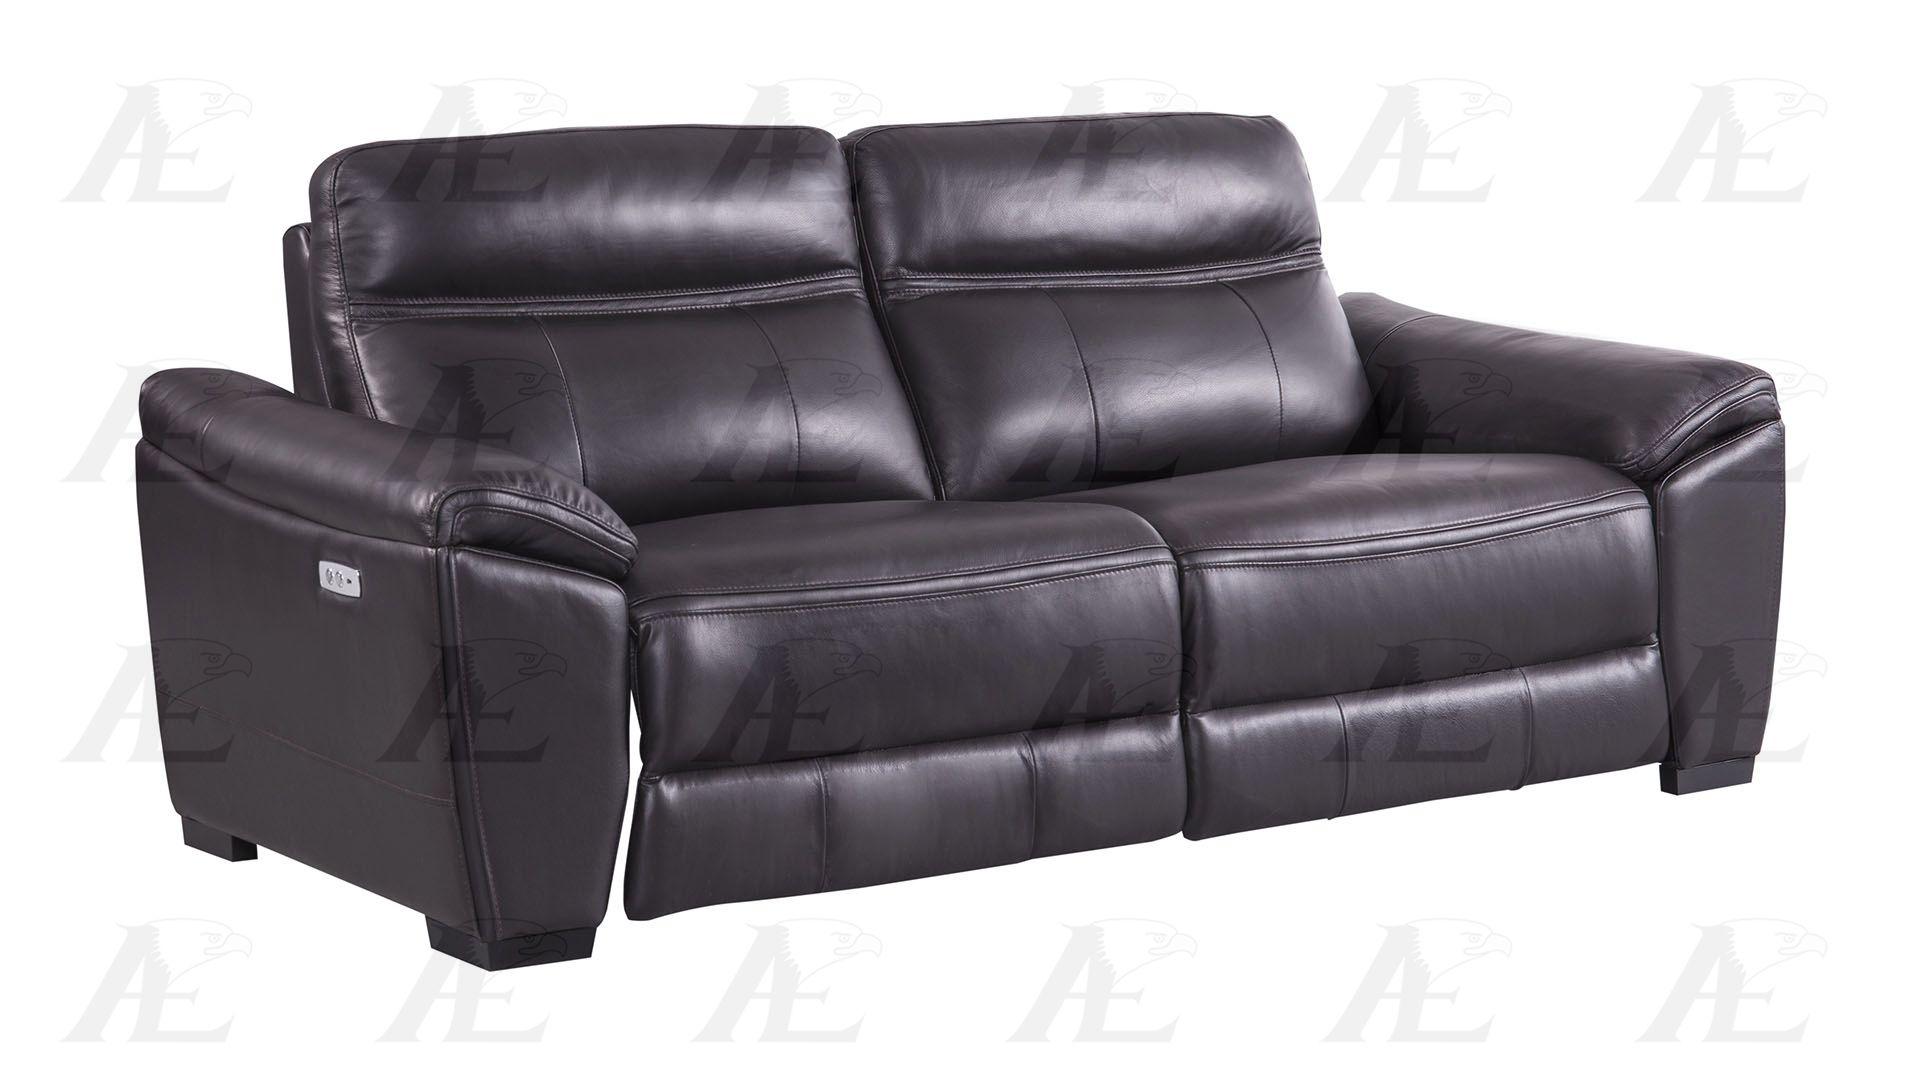 

    
American Eagle Furniture EK088-DB-LS Recliner Loveseat Dark Brown EK088-DB-LS
